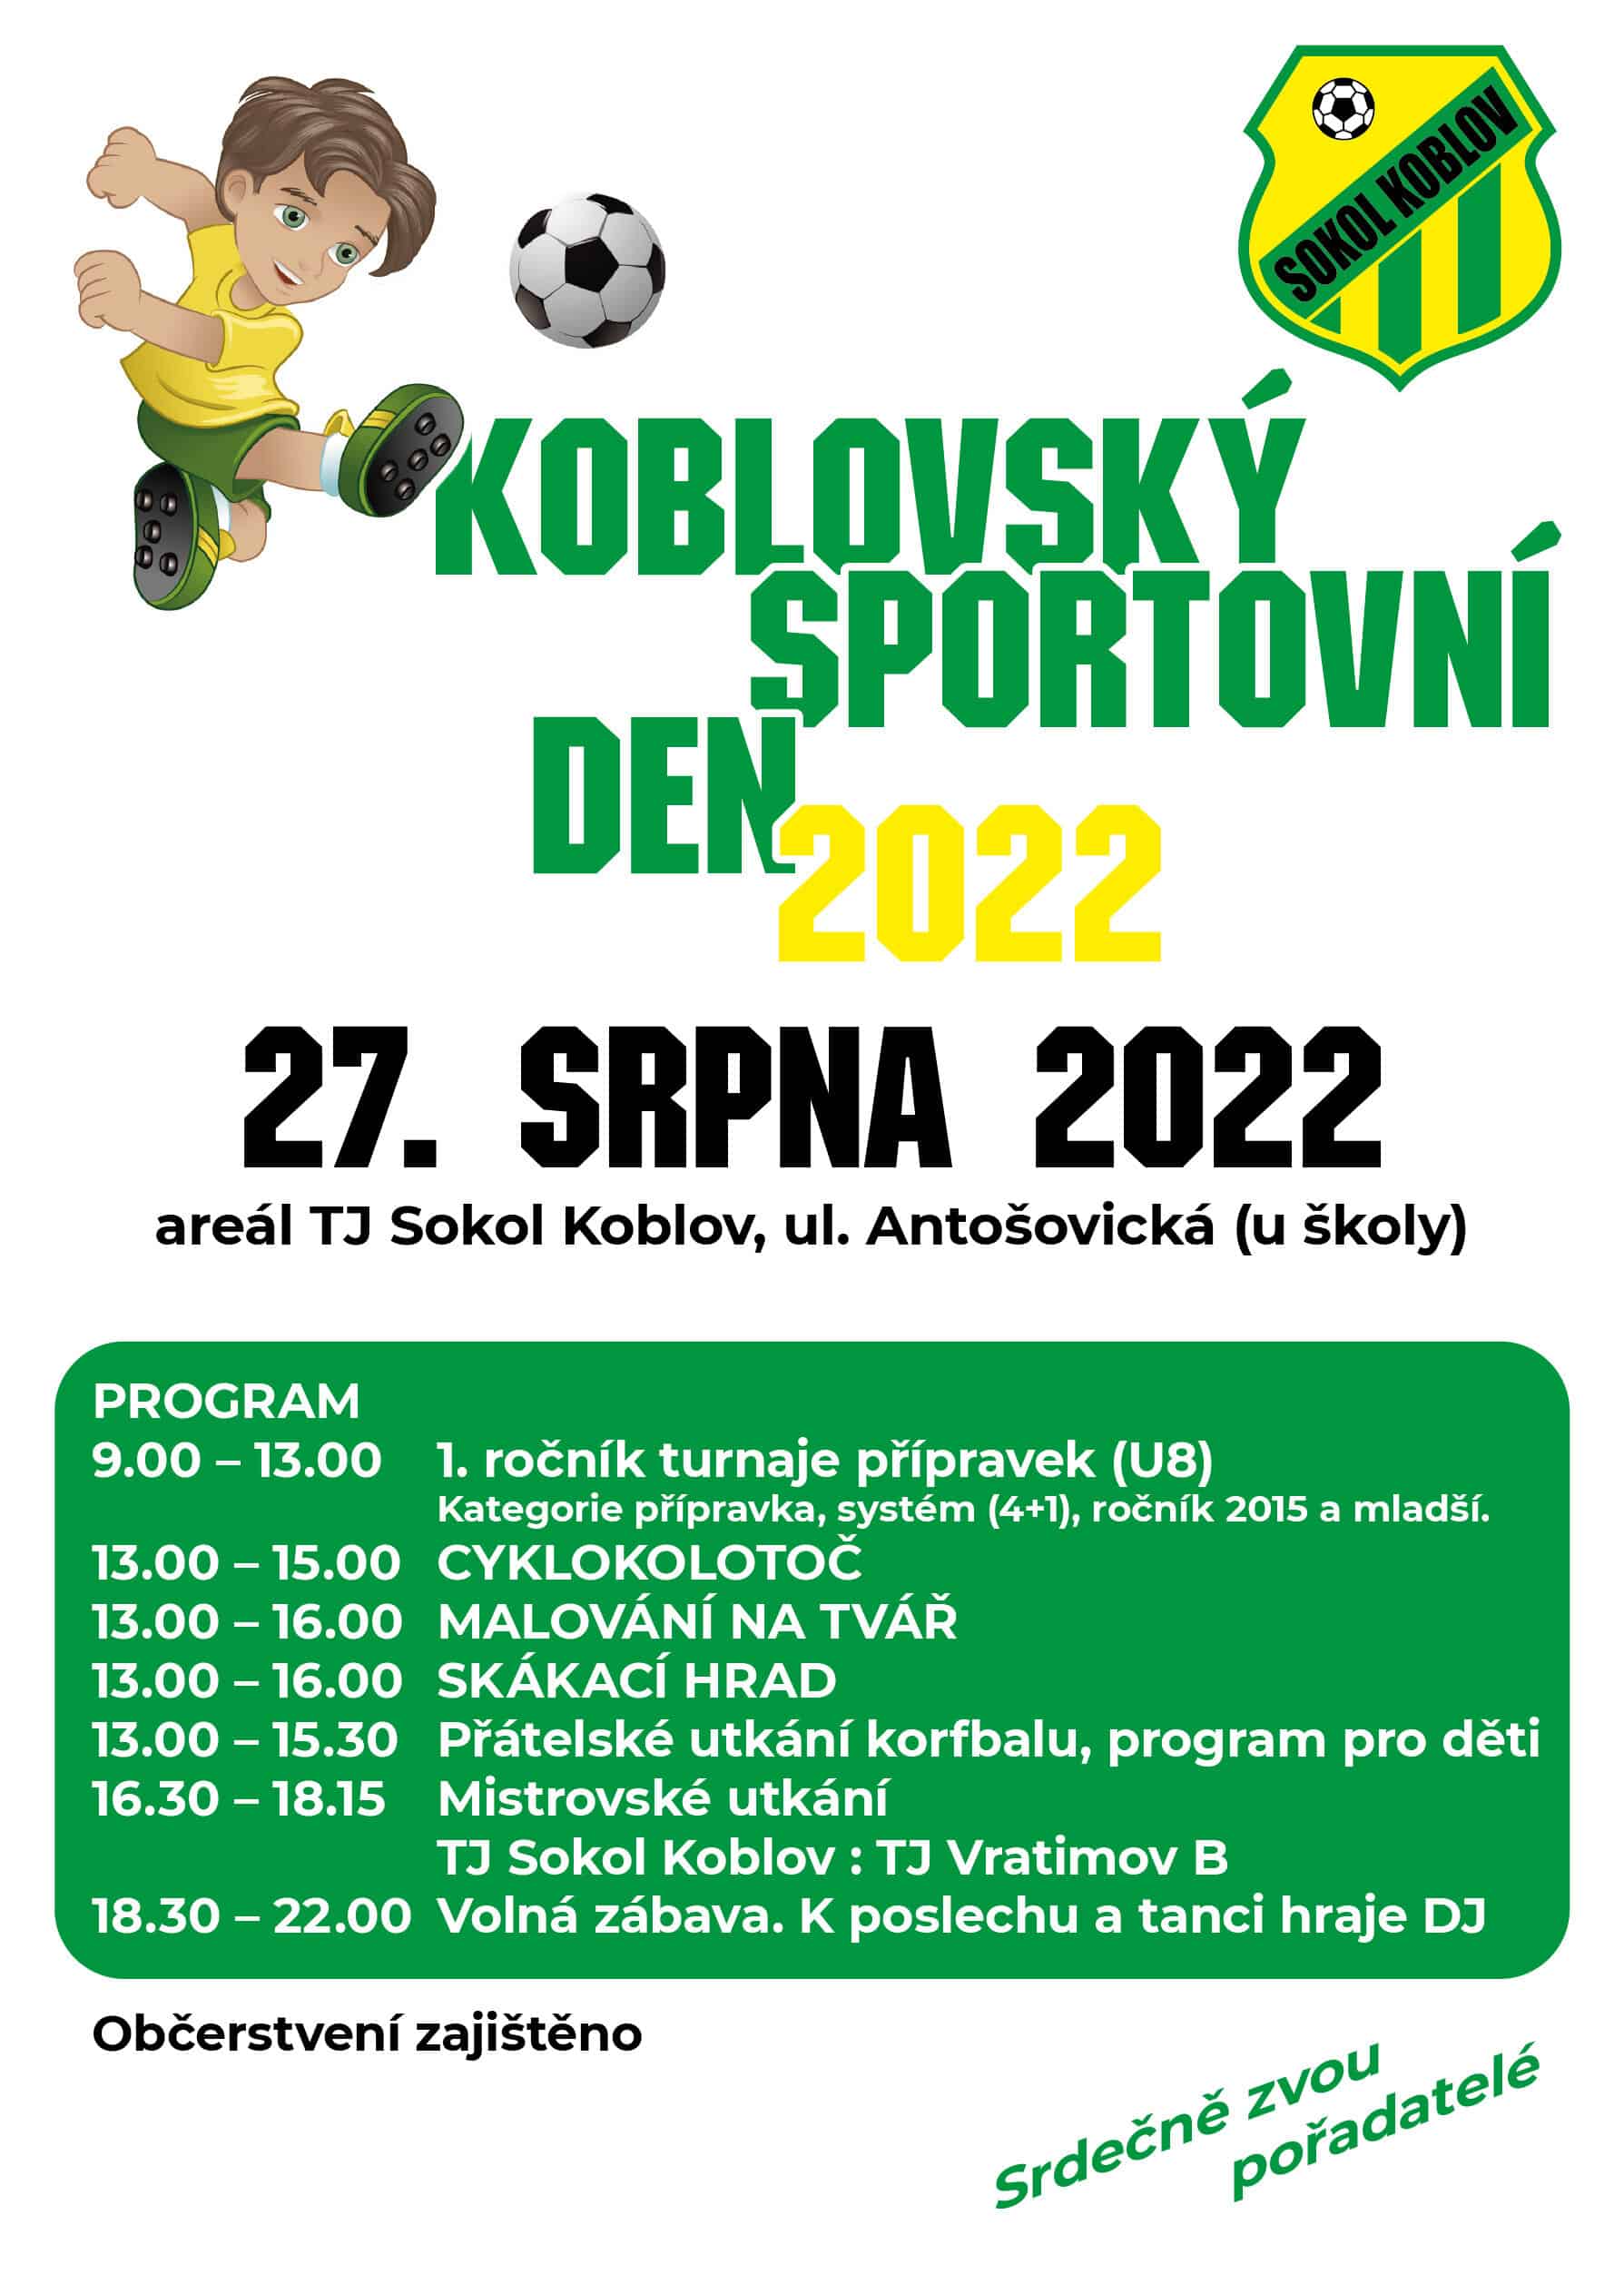 Koblovský sportovní den 2022